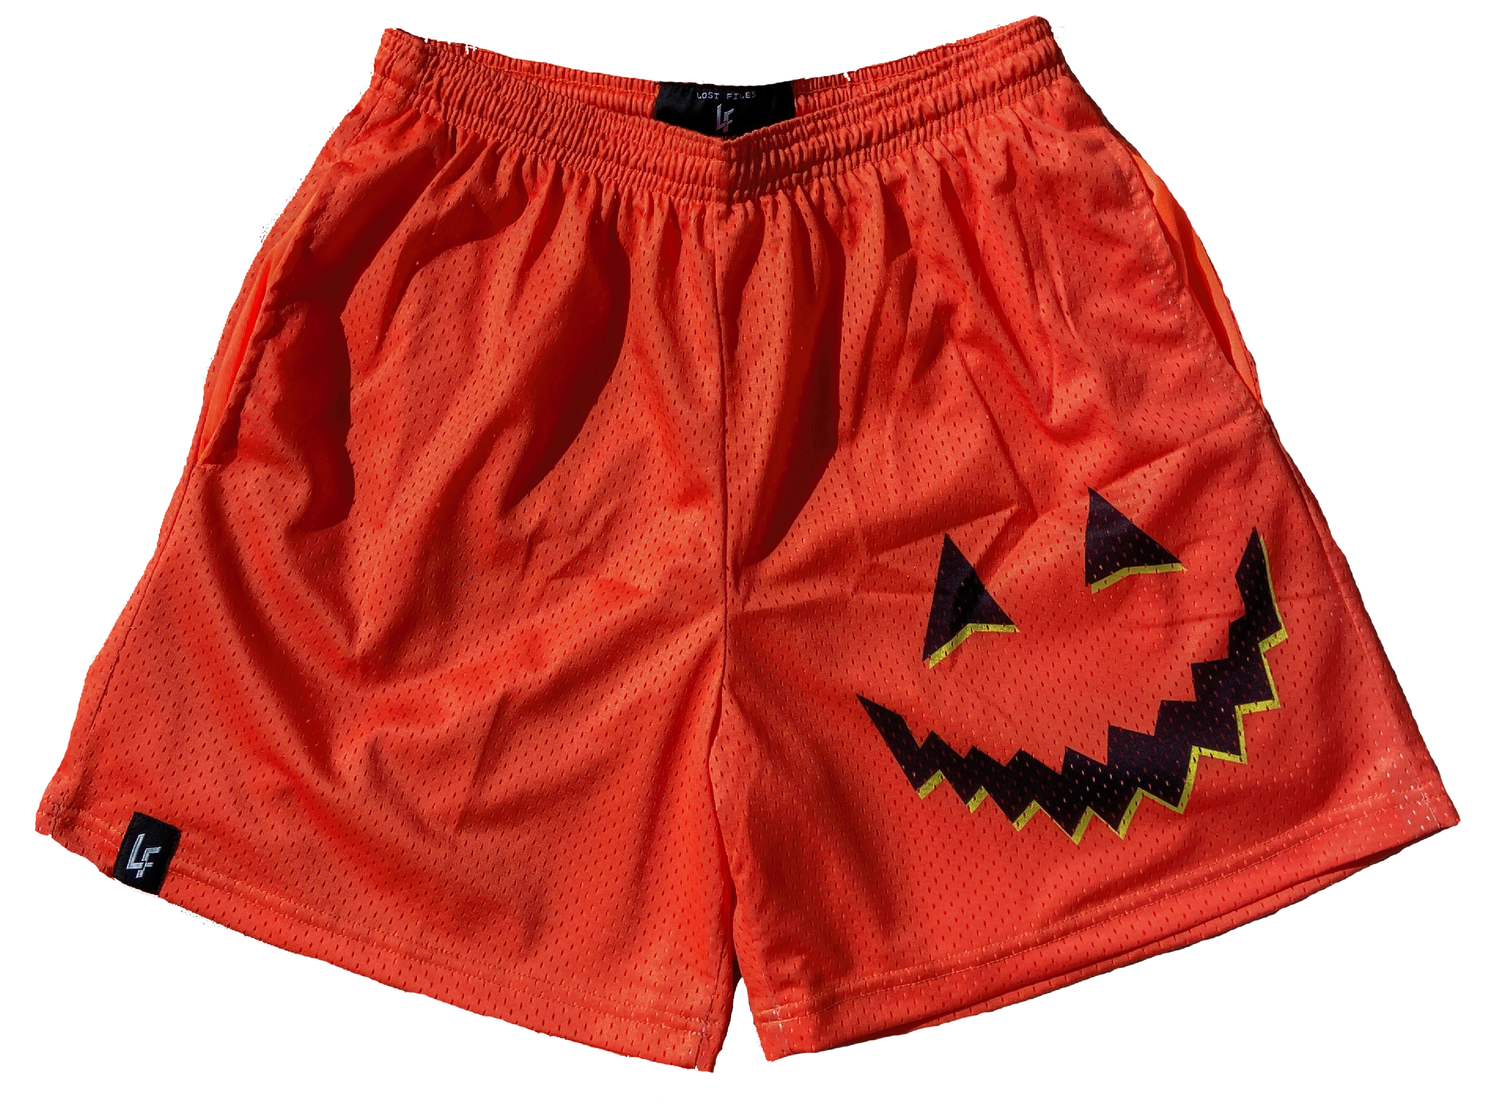 Jack-O-Lantern Shorts